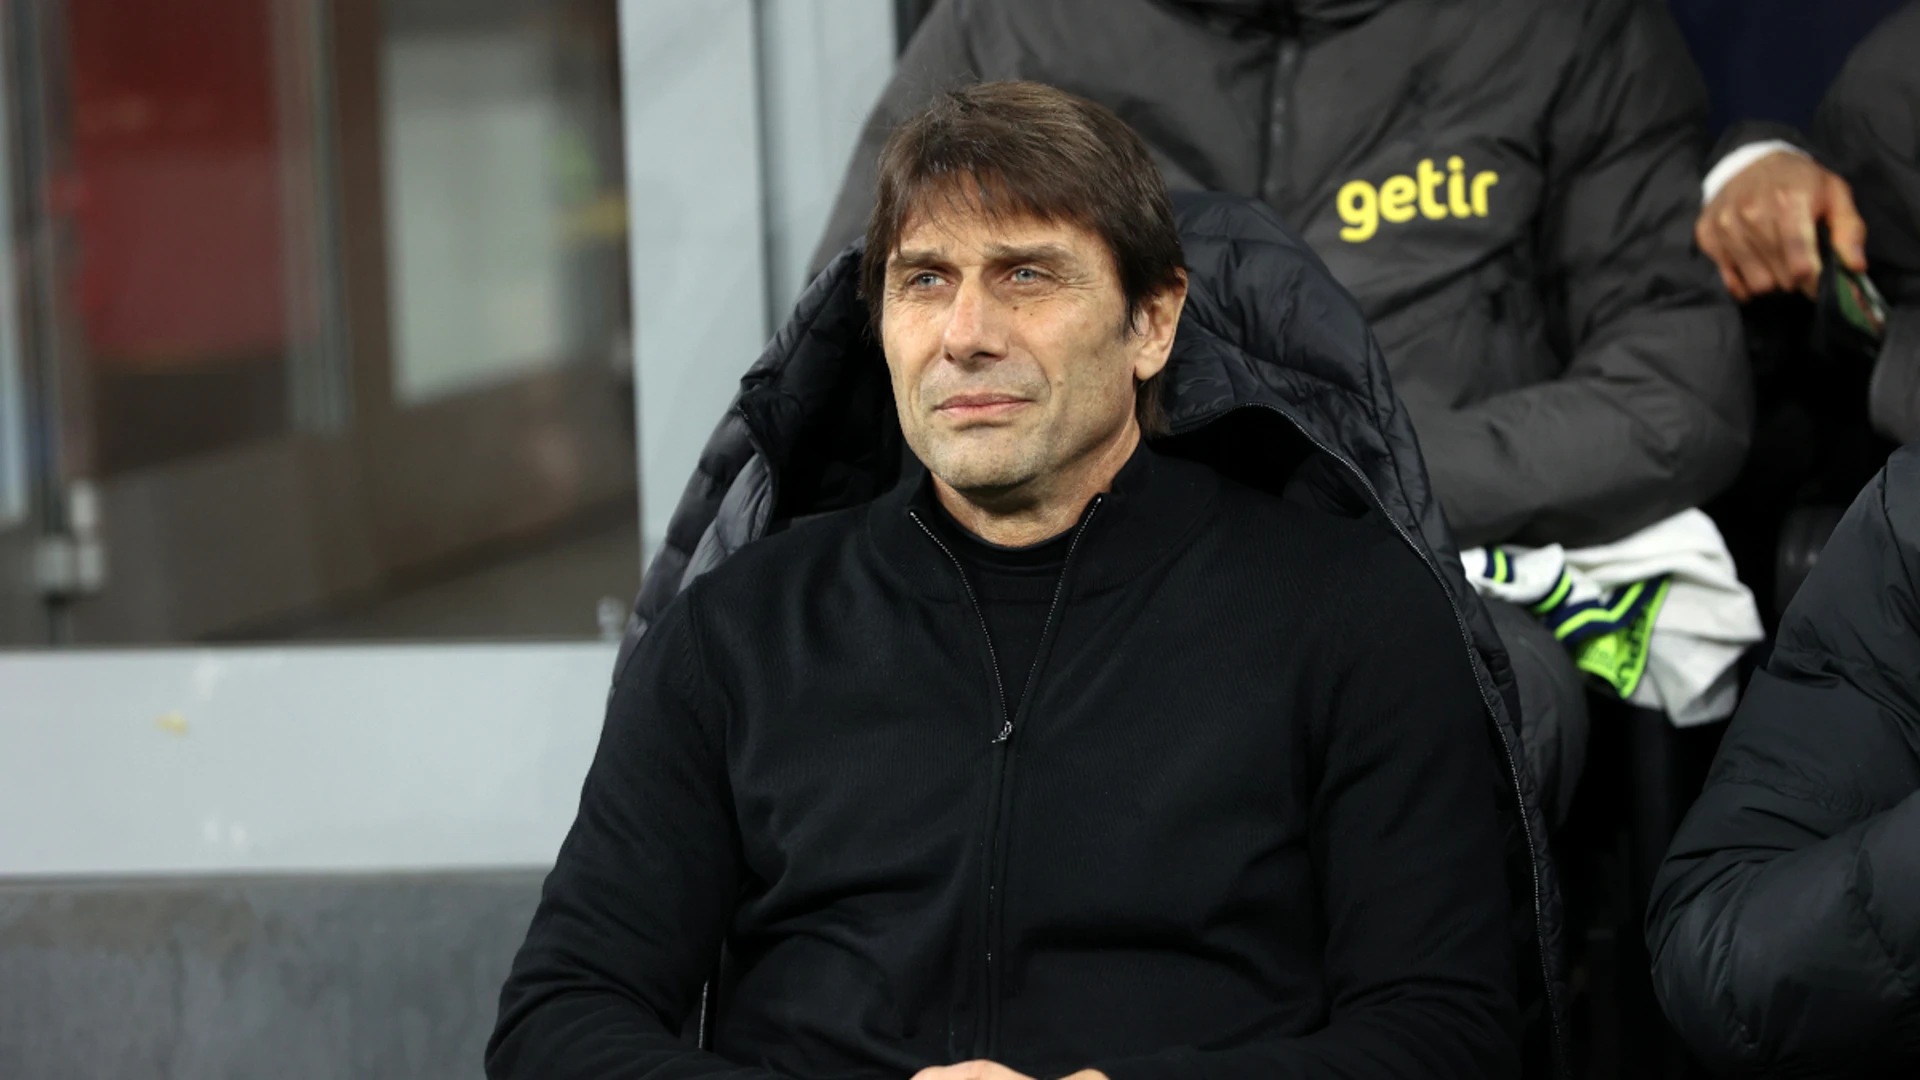 Antonio Conte named new Napoli coach